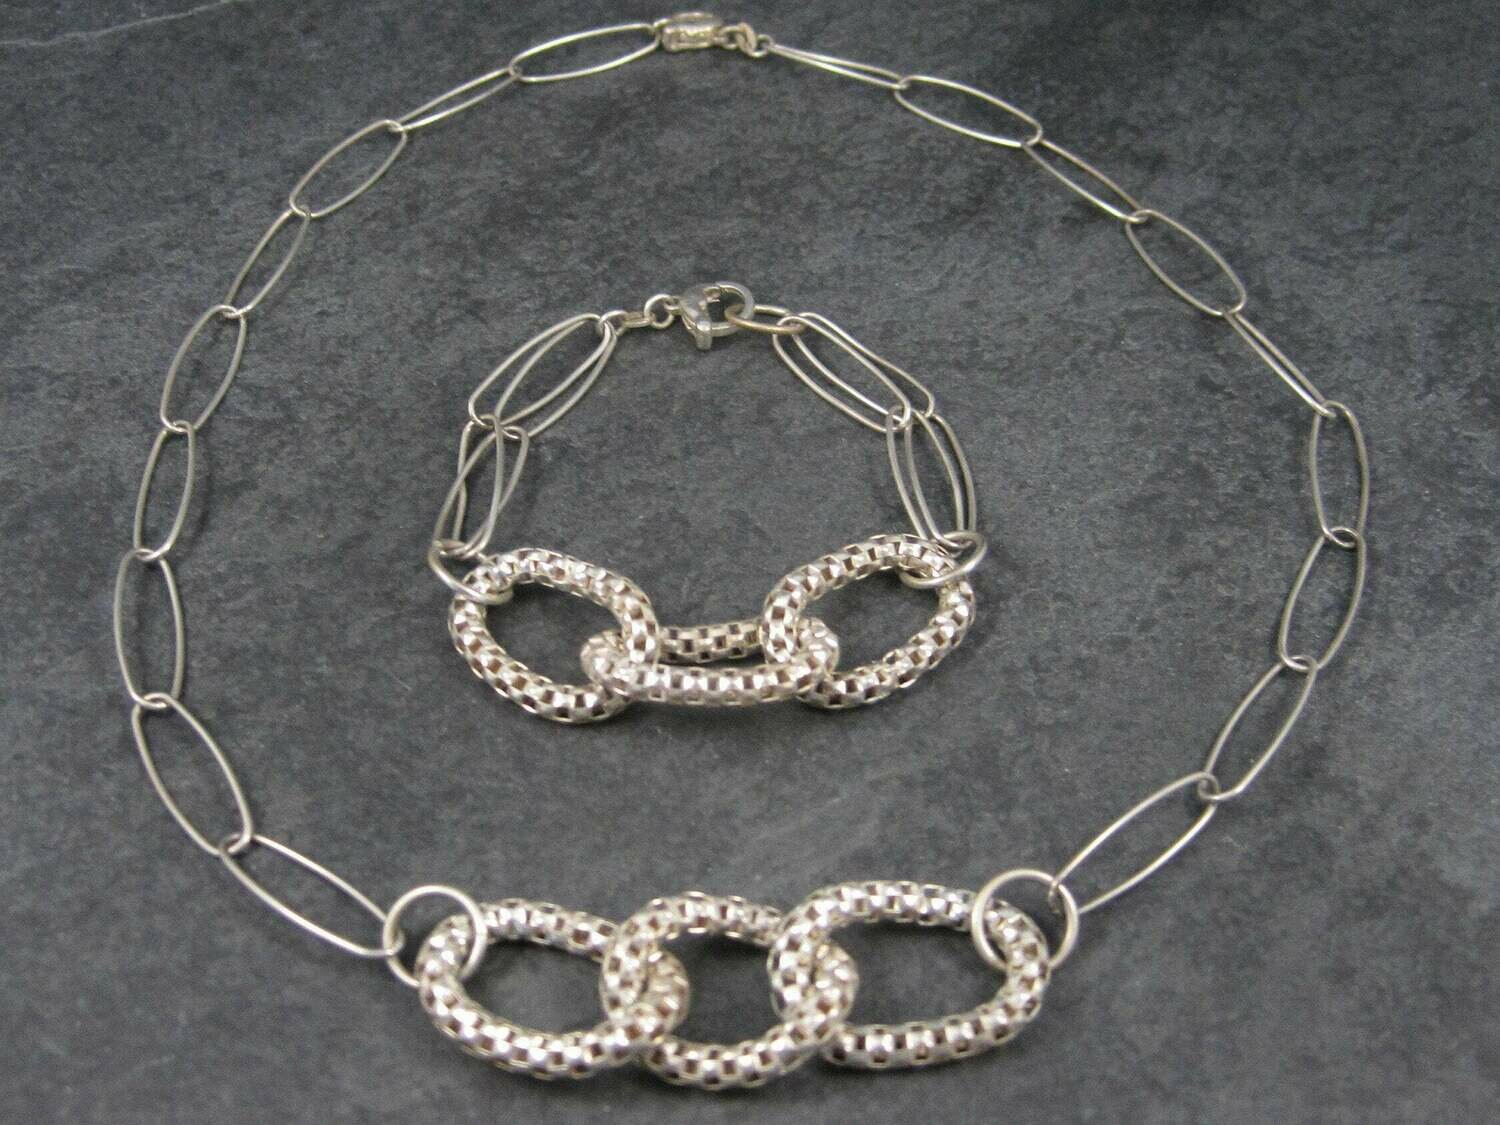 Vintage Modern Sterling Necklace Bracelet Jewelry Set